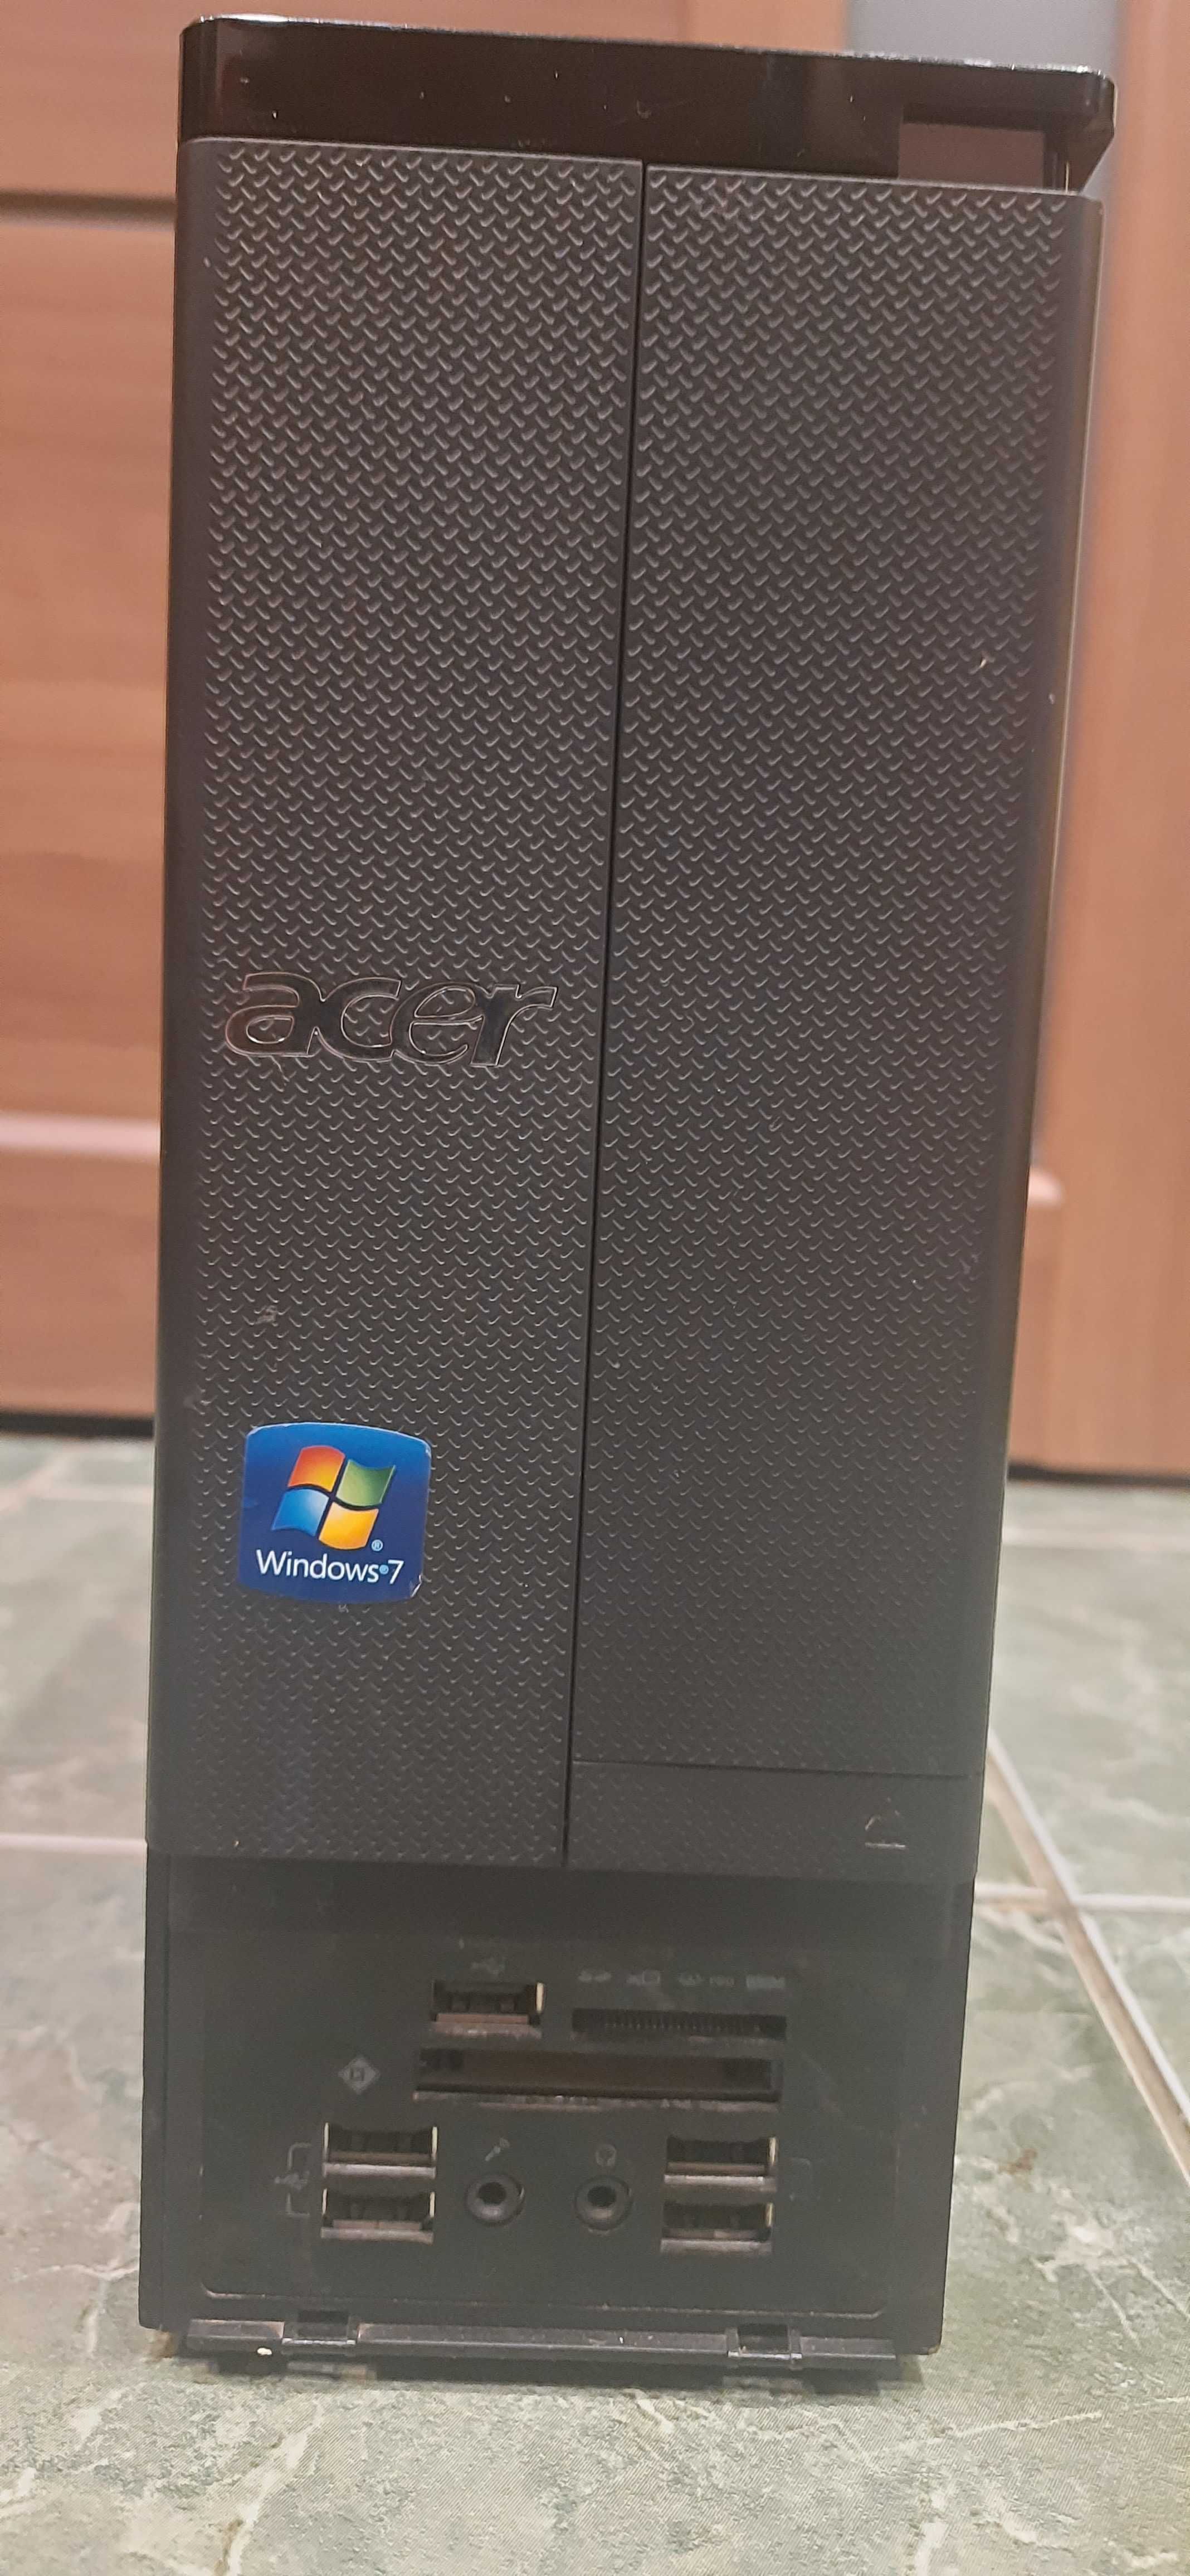 Компютер Acer Aspire AX3400